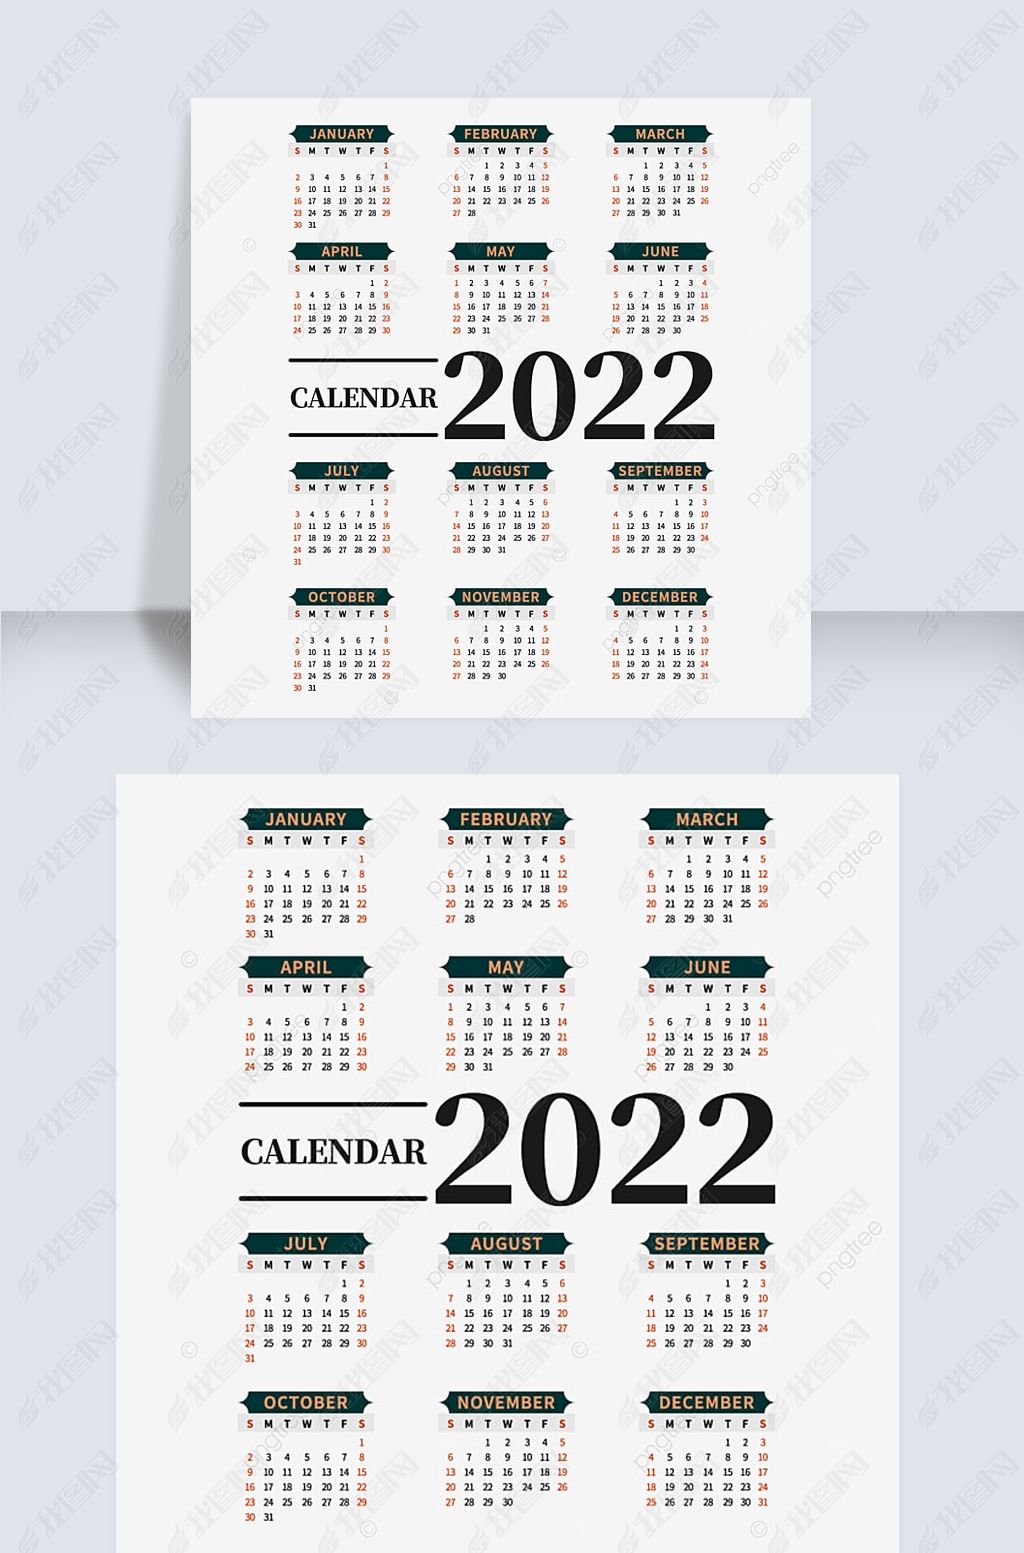 20222022